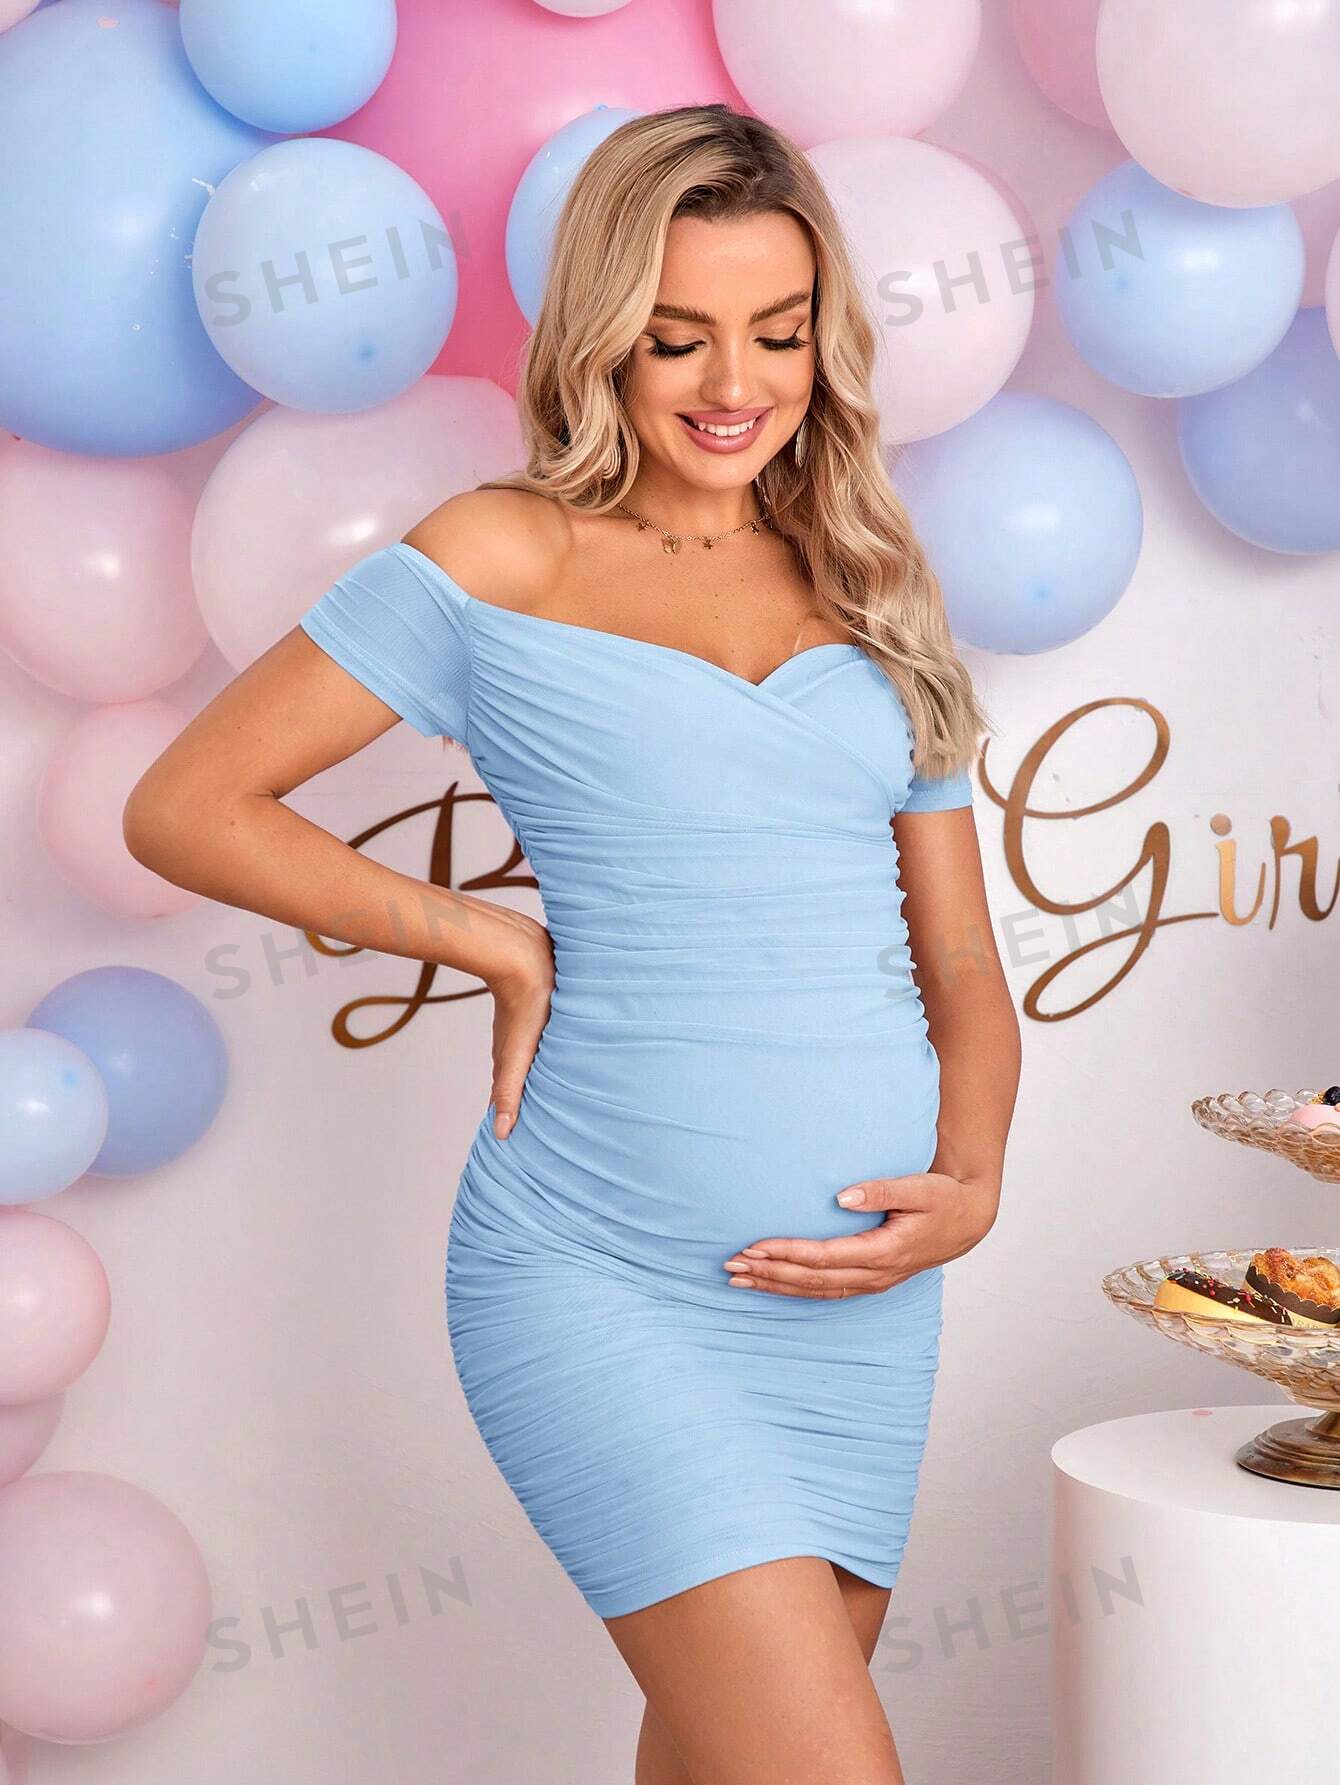 SHEIN Однотонное облегающее модное платье для беременных с открытыми плечами, голубые сетчатое облегающее платье с длинным рукавом асимметричное мини платье с вырезом и рюшами соблазнительные вечерние платья с открытыми пл